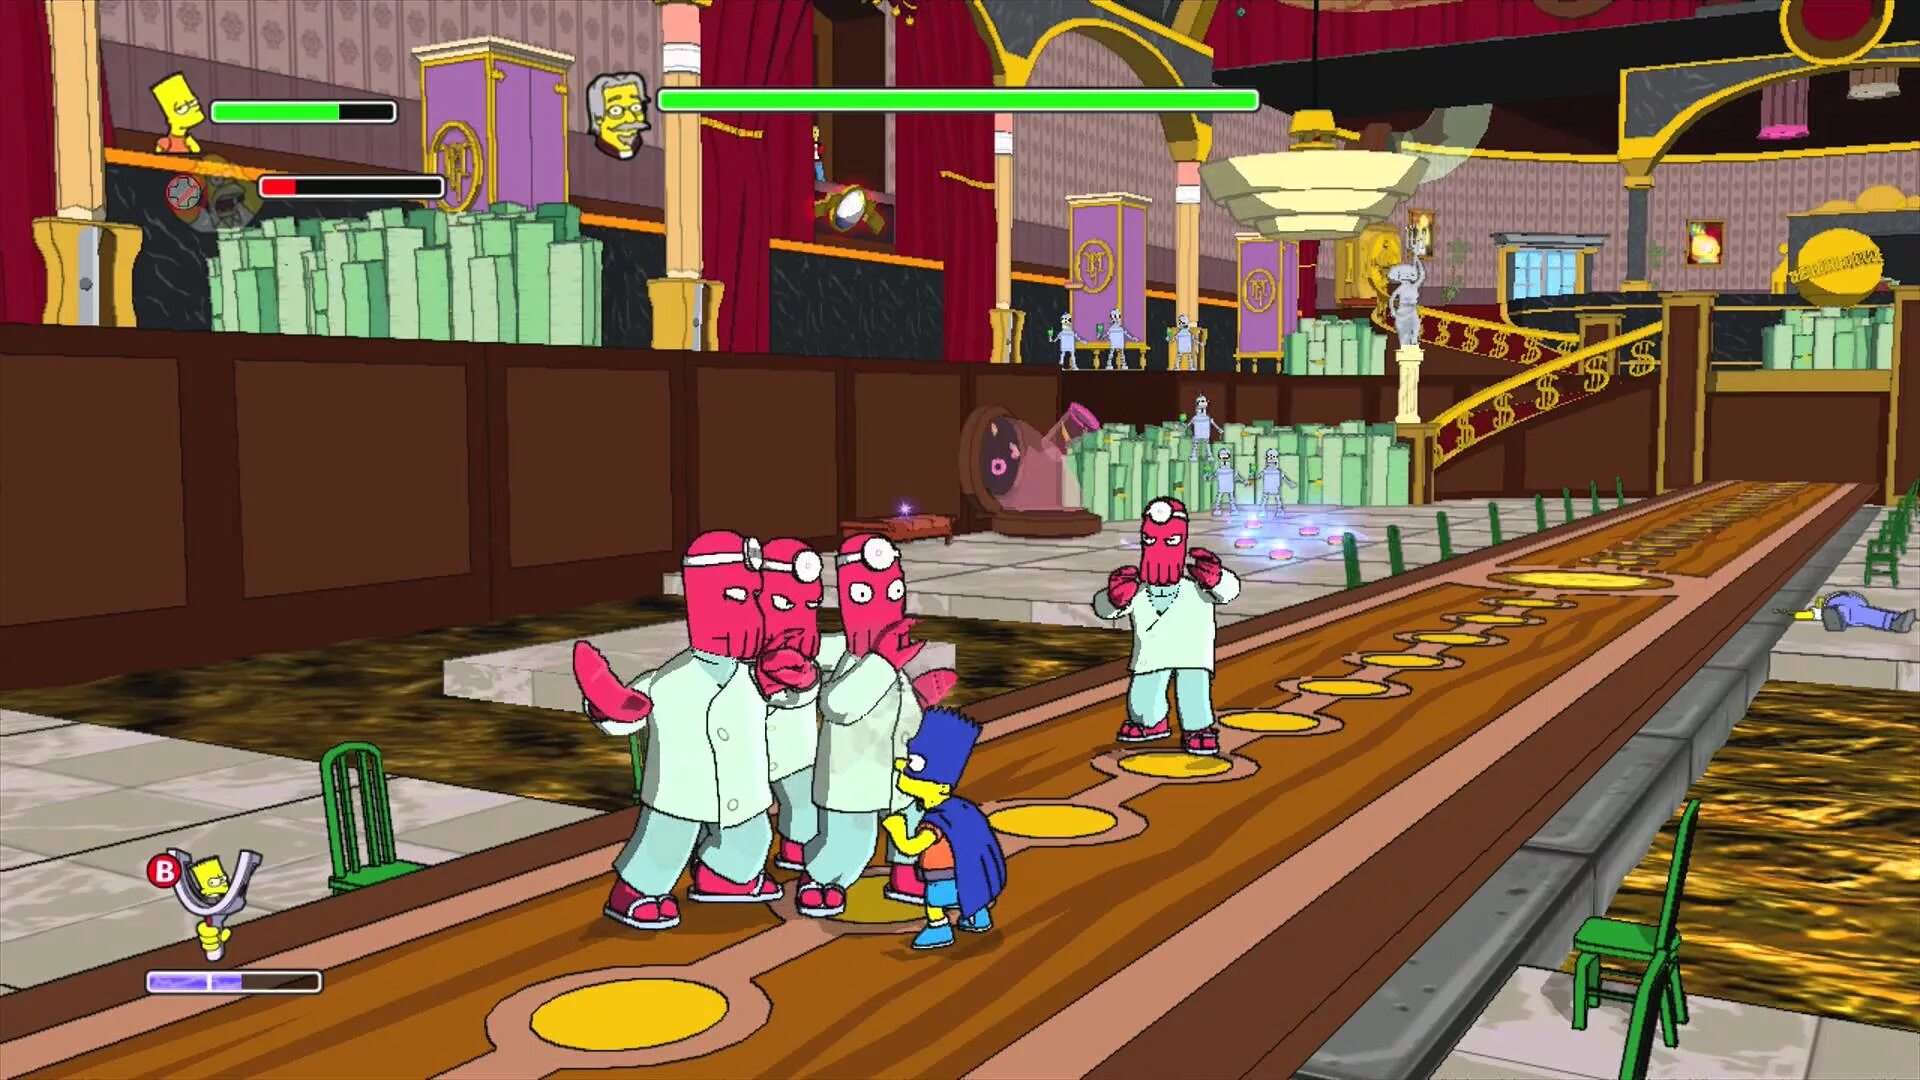 Компьютерные игры для детей 2. Симпсоны игра 2007. Симпсоны на Xbox 360. Симпсоны игра на ps3. The Simpsons game Xbox 360.